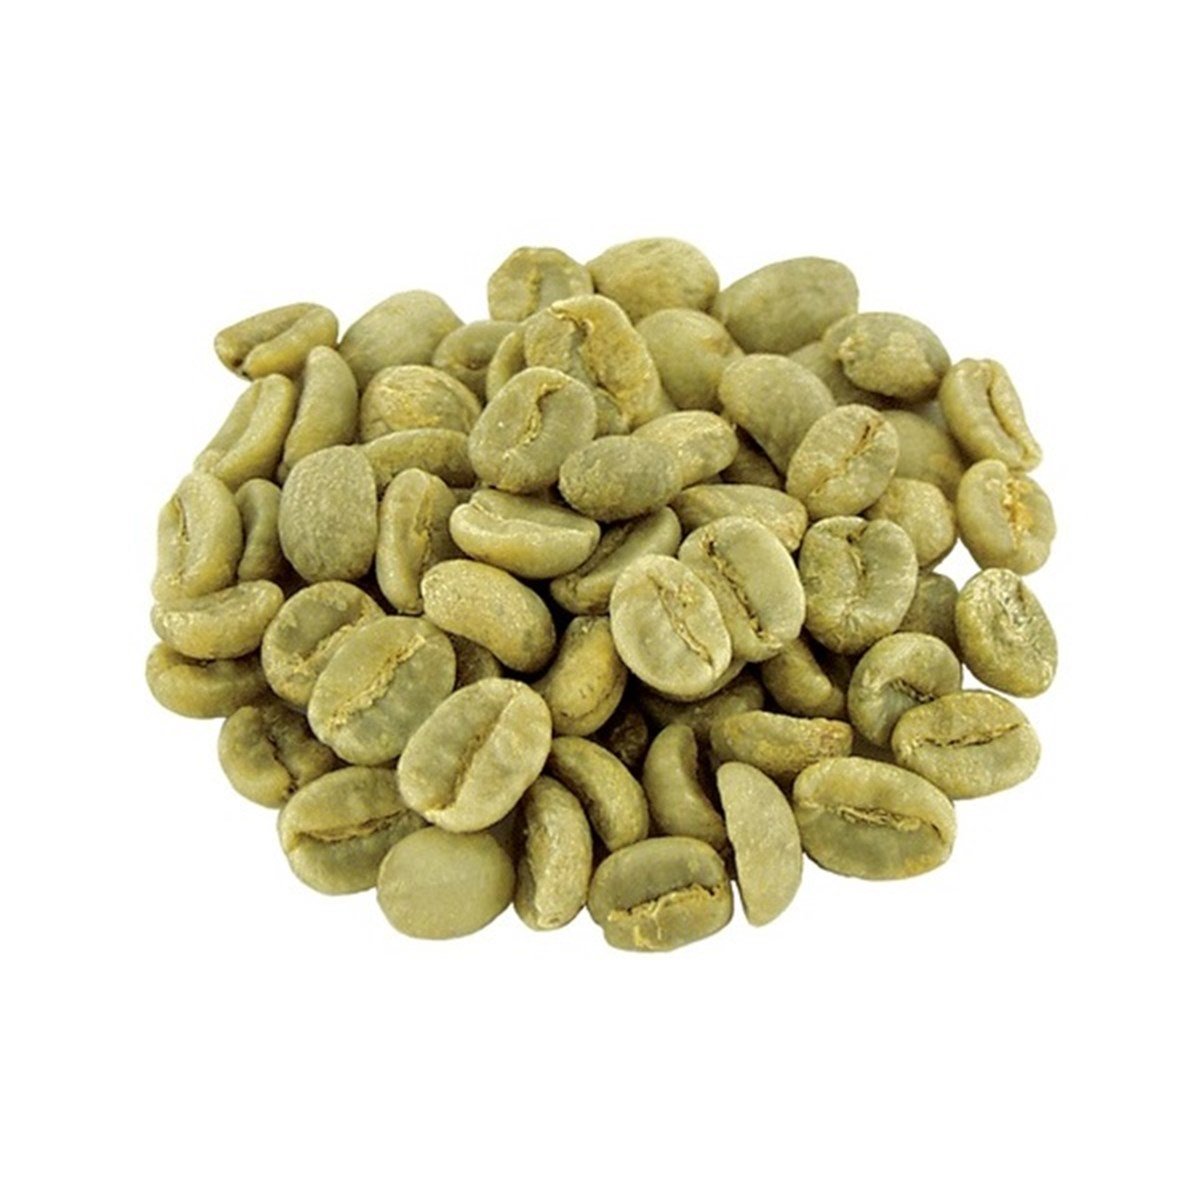 Yeşil Kahve Çekirdeği (Green Coffee Seeds)